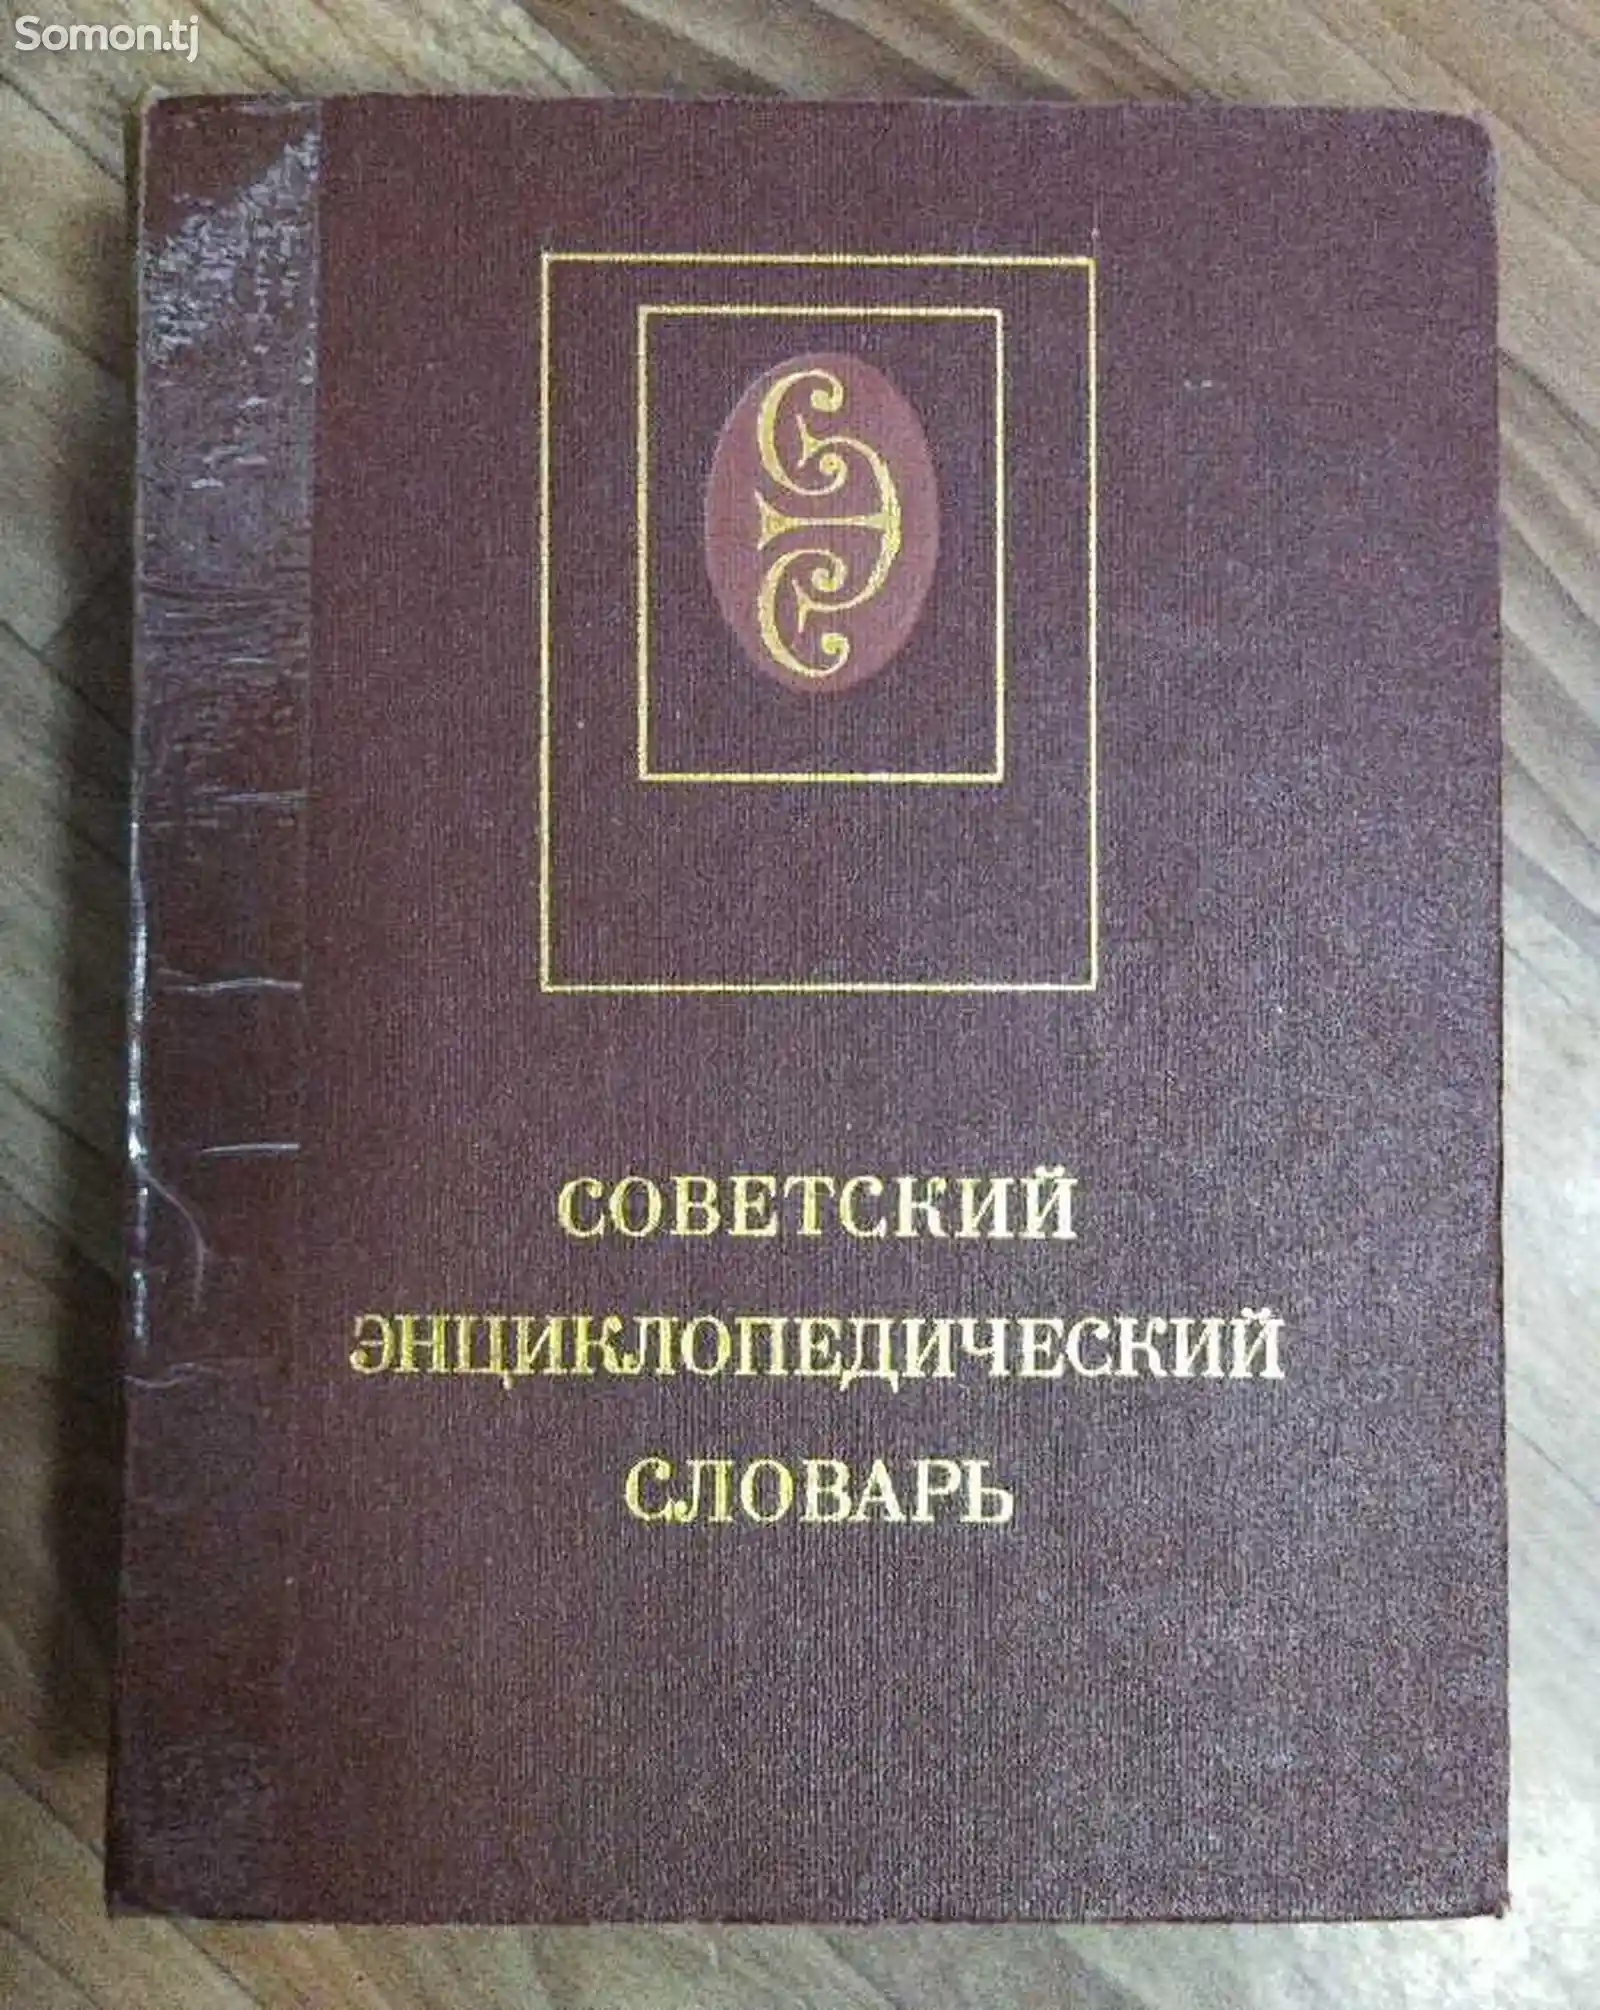 Книга советский энциклопедический словарь